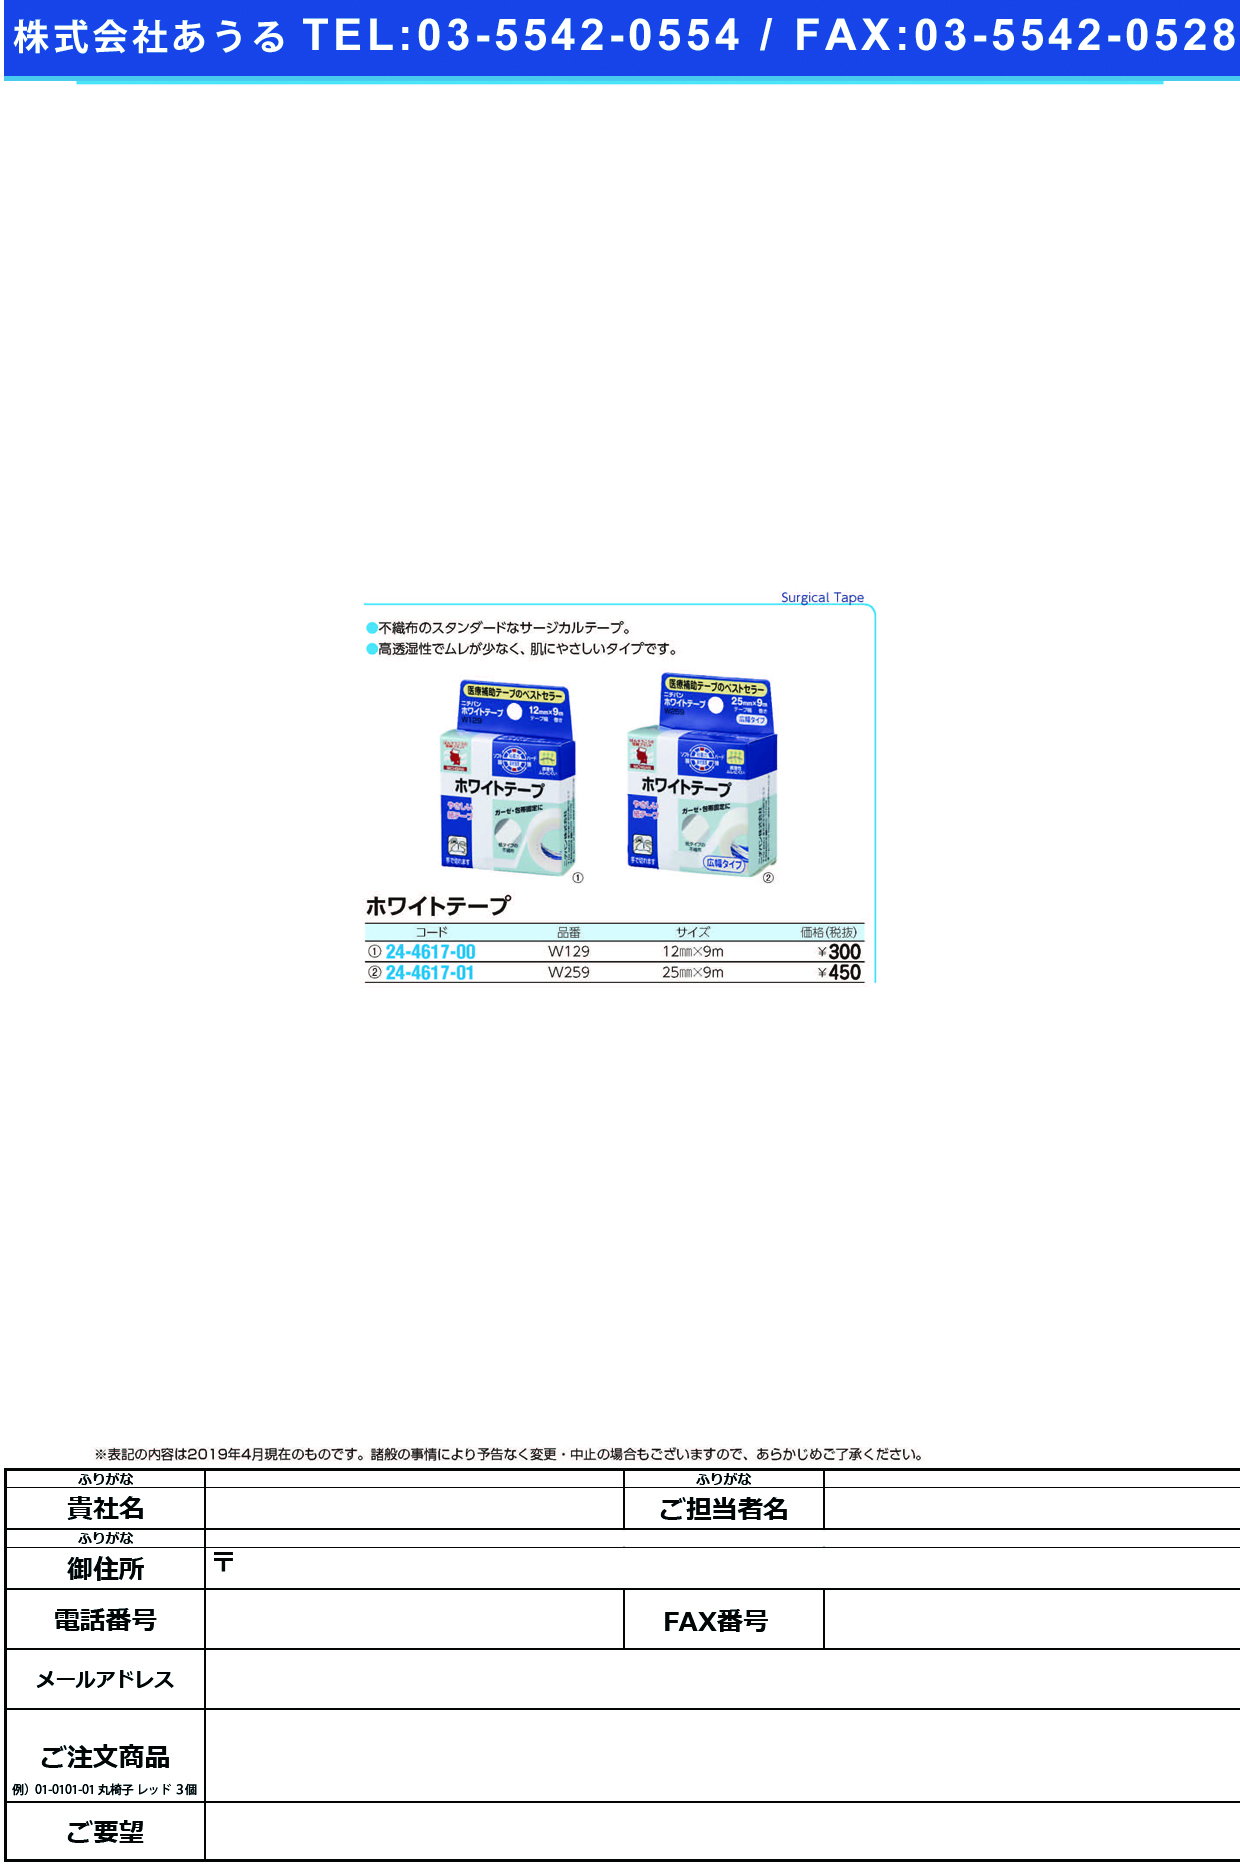 (24-4617-01)ニチバンホワイトテープ W259(25MMX9M) ﾆﾁﾊﾞﾝﾎﾜｲﾄﾃｰﾌﾟ(ニチバン)【1個単位】【2019年カタログ商品】